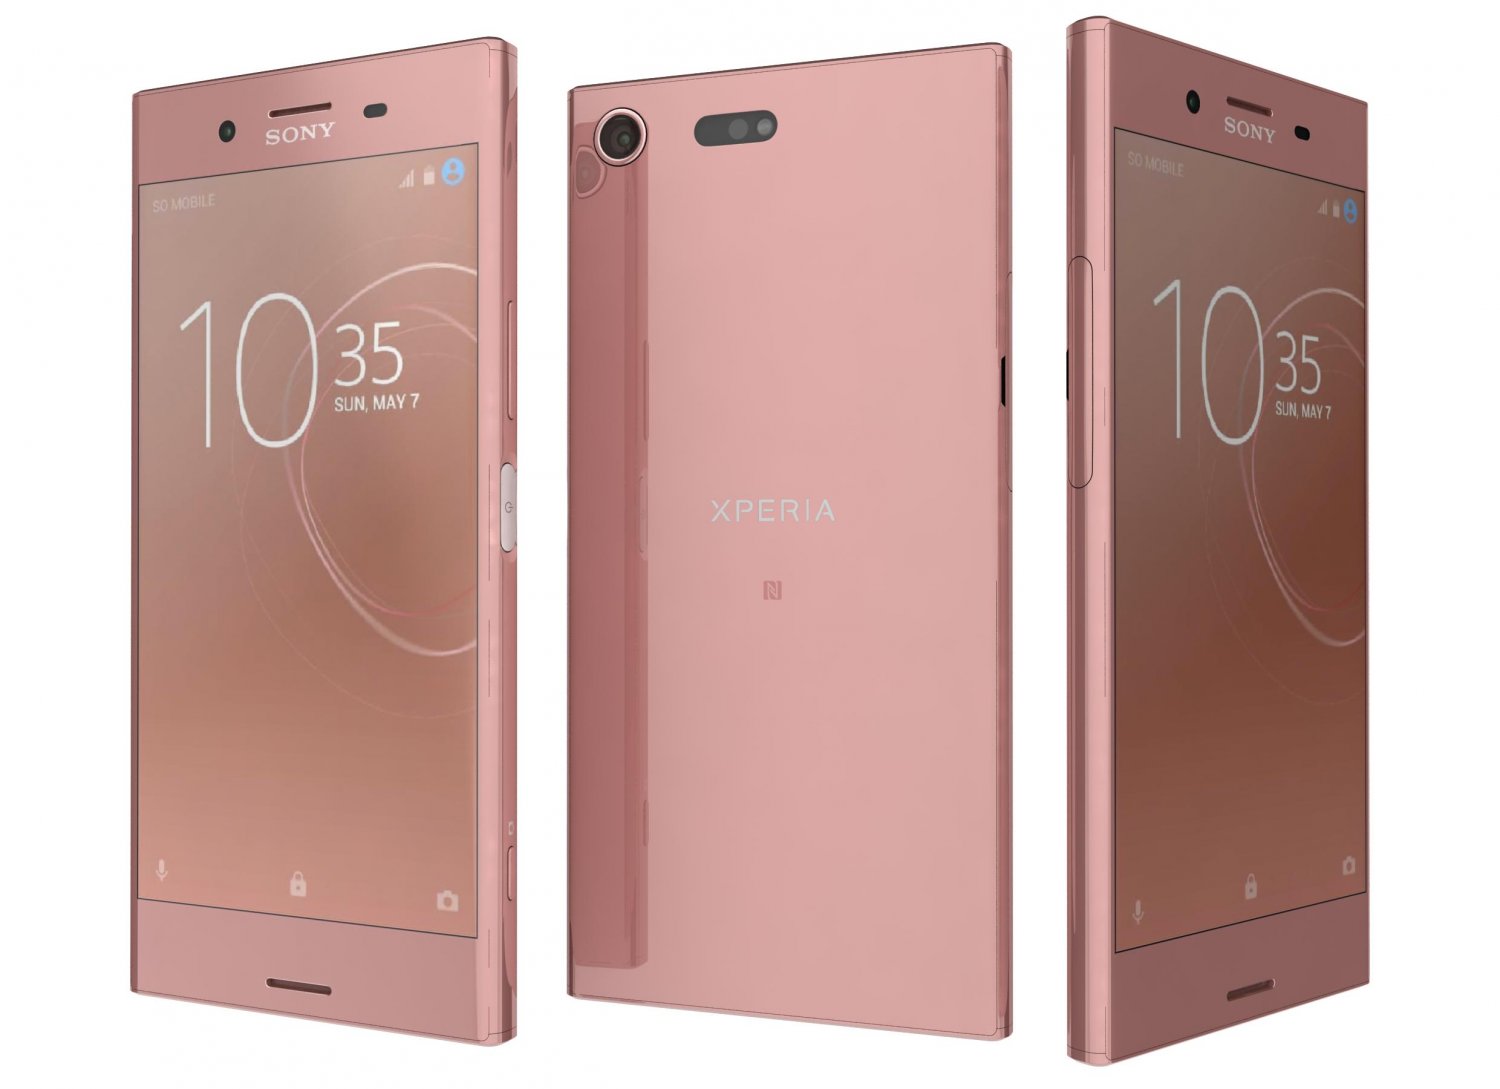 Dank u voor uw hulp begrijpen Levendig sony xperia xz premium bronze pink 3D Model in Phone and Cell Phone 3DExport